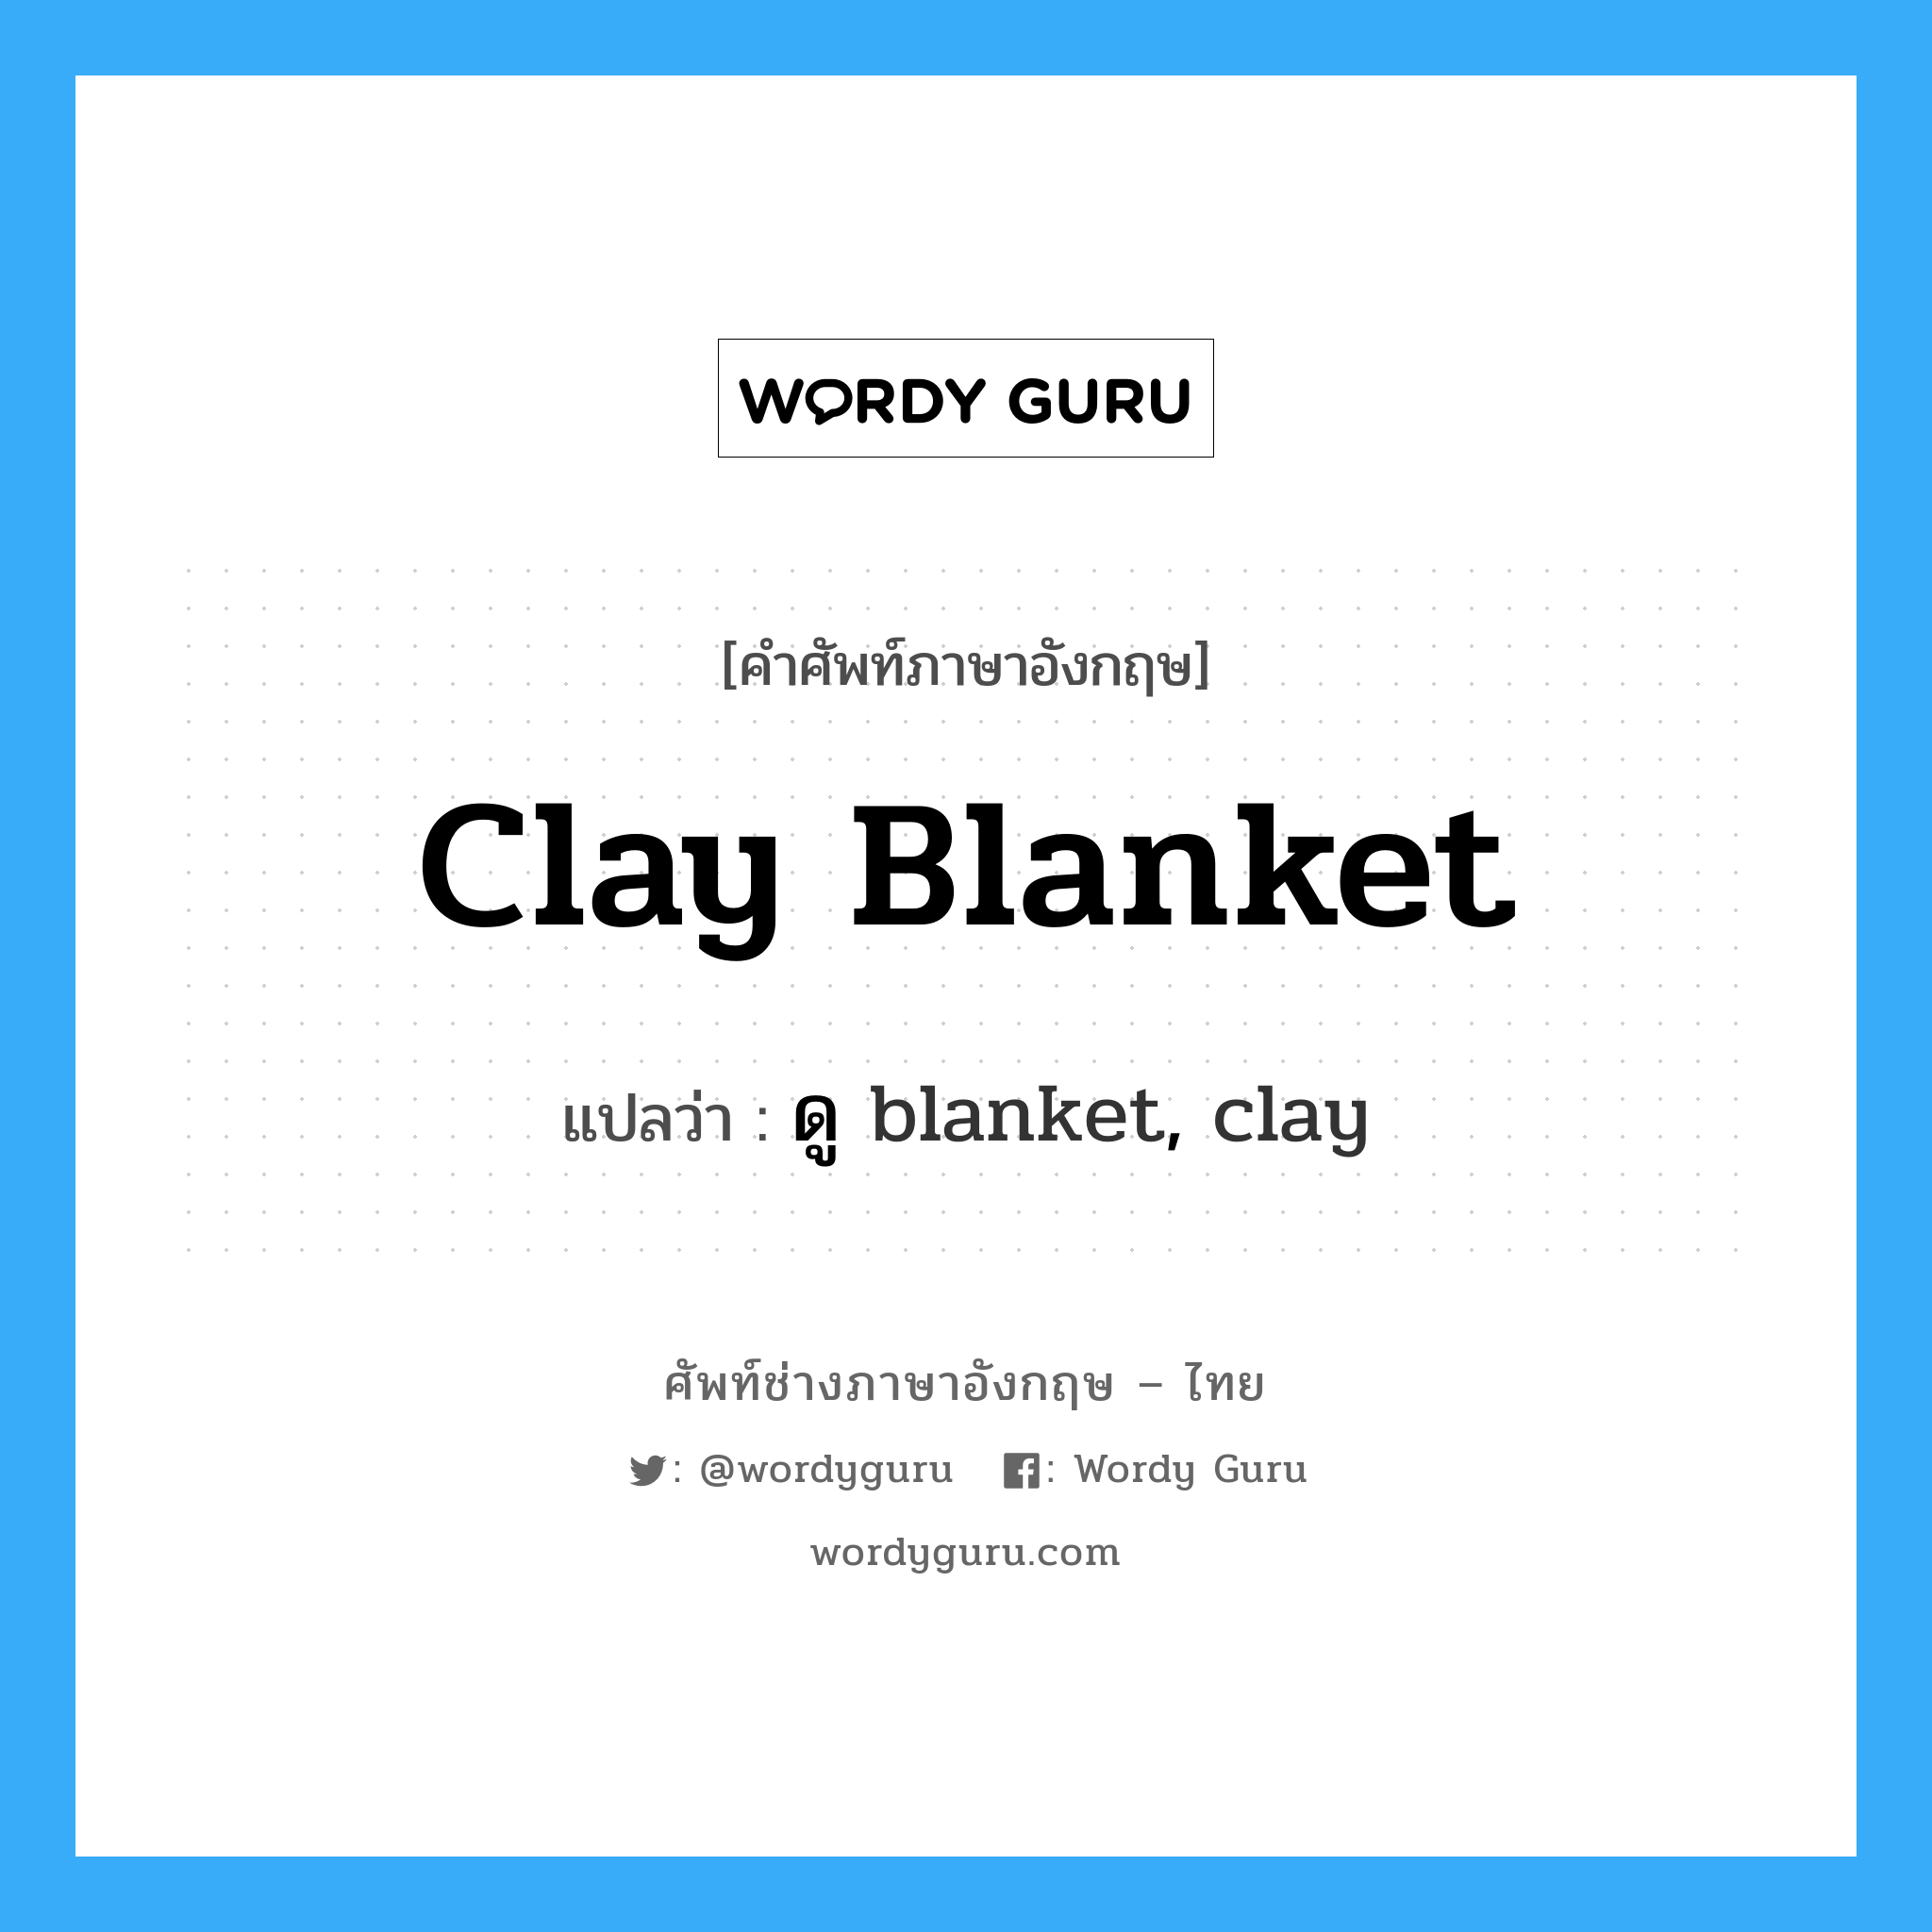 clay blanket แปลว่า?, คำศัพท์ช่างภาษาอังกฤษ - ไทย clay blanket คำศัพท์ภาษาอังกฤษ clay blanket แปลว่า ดู blanket, clay